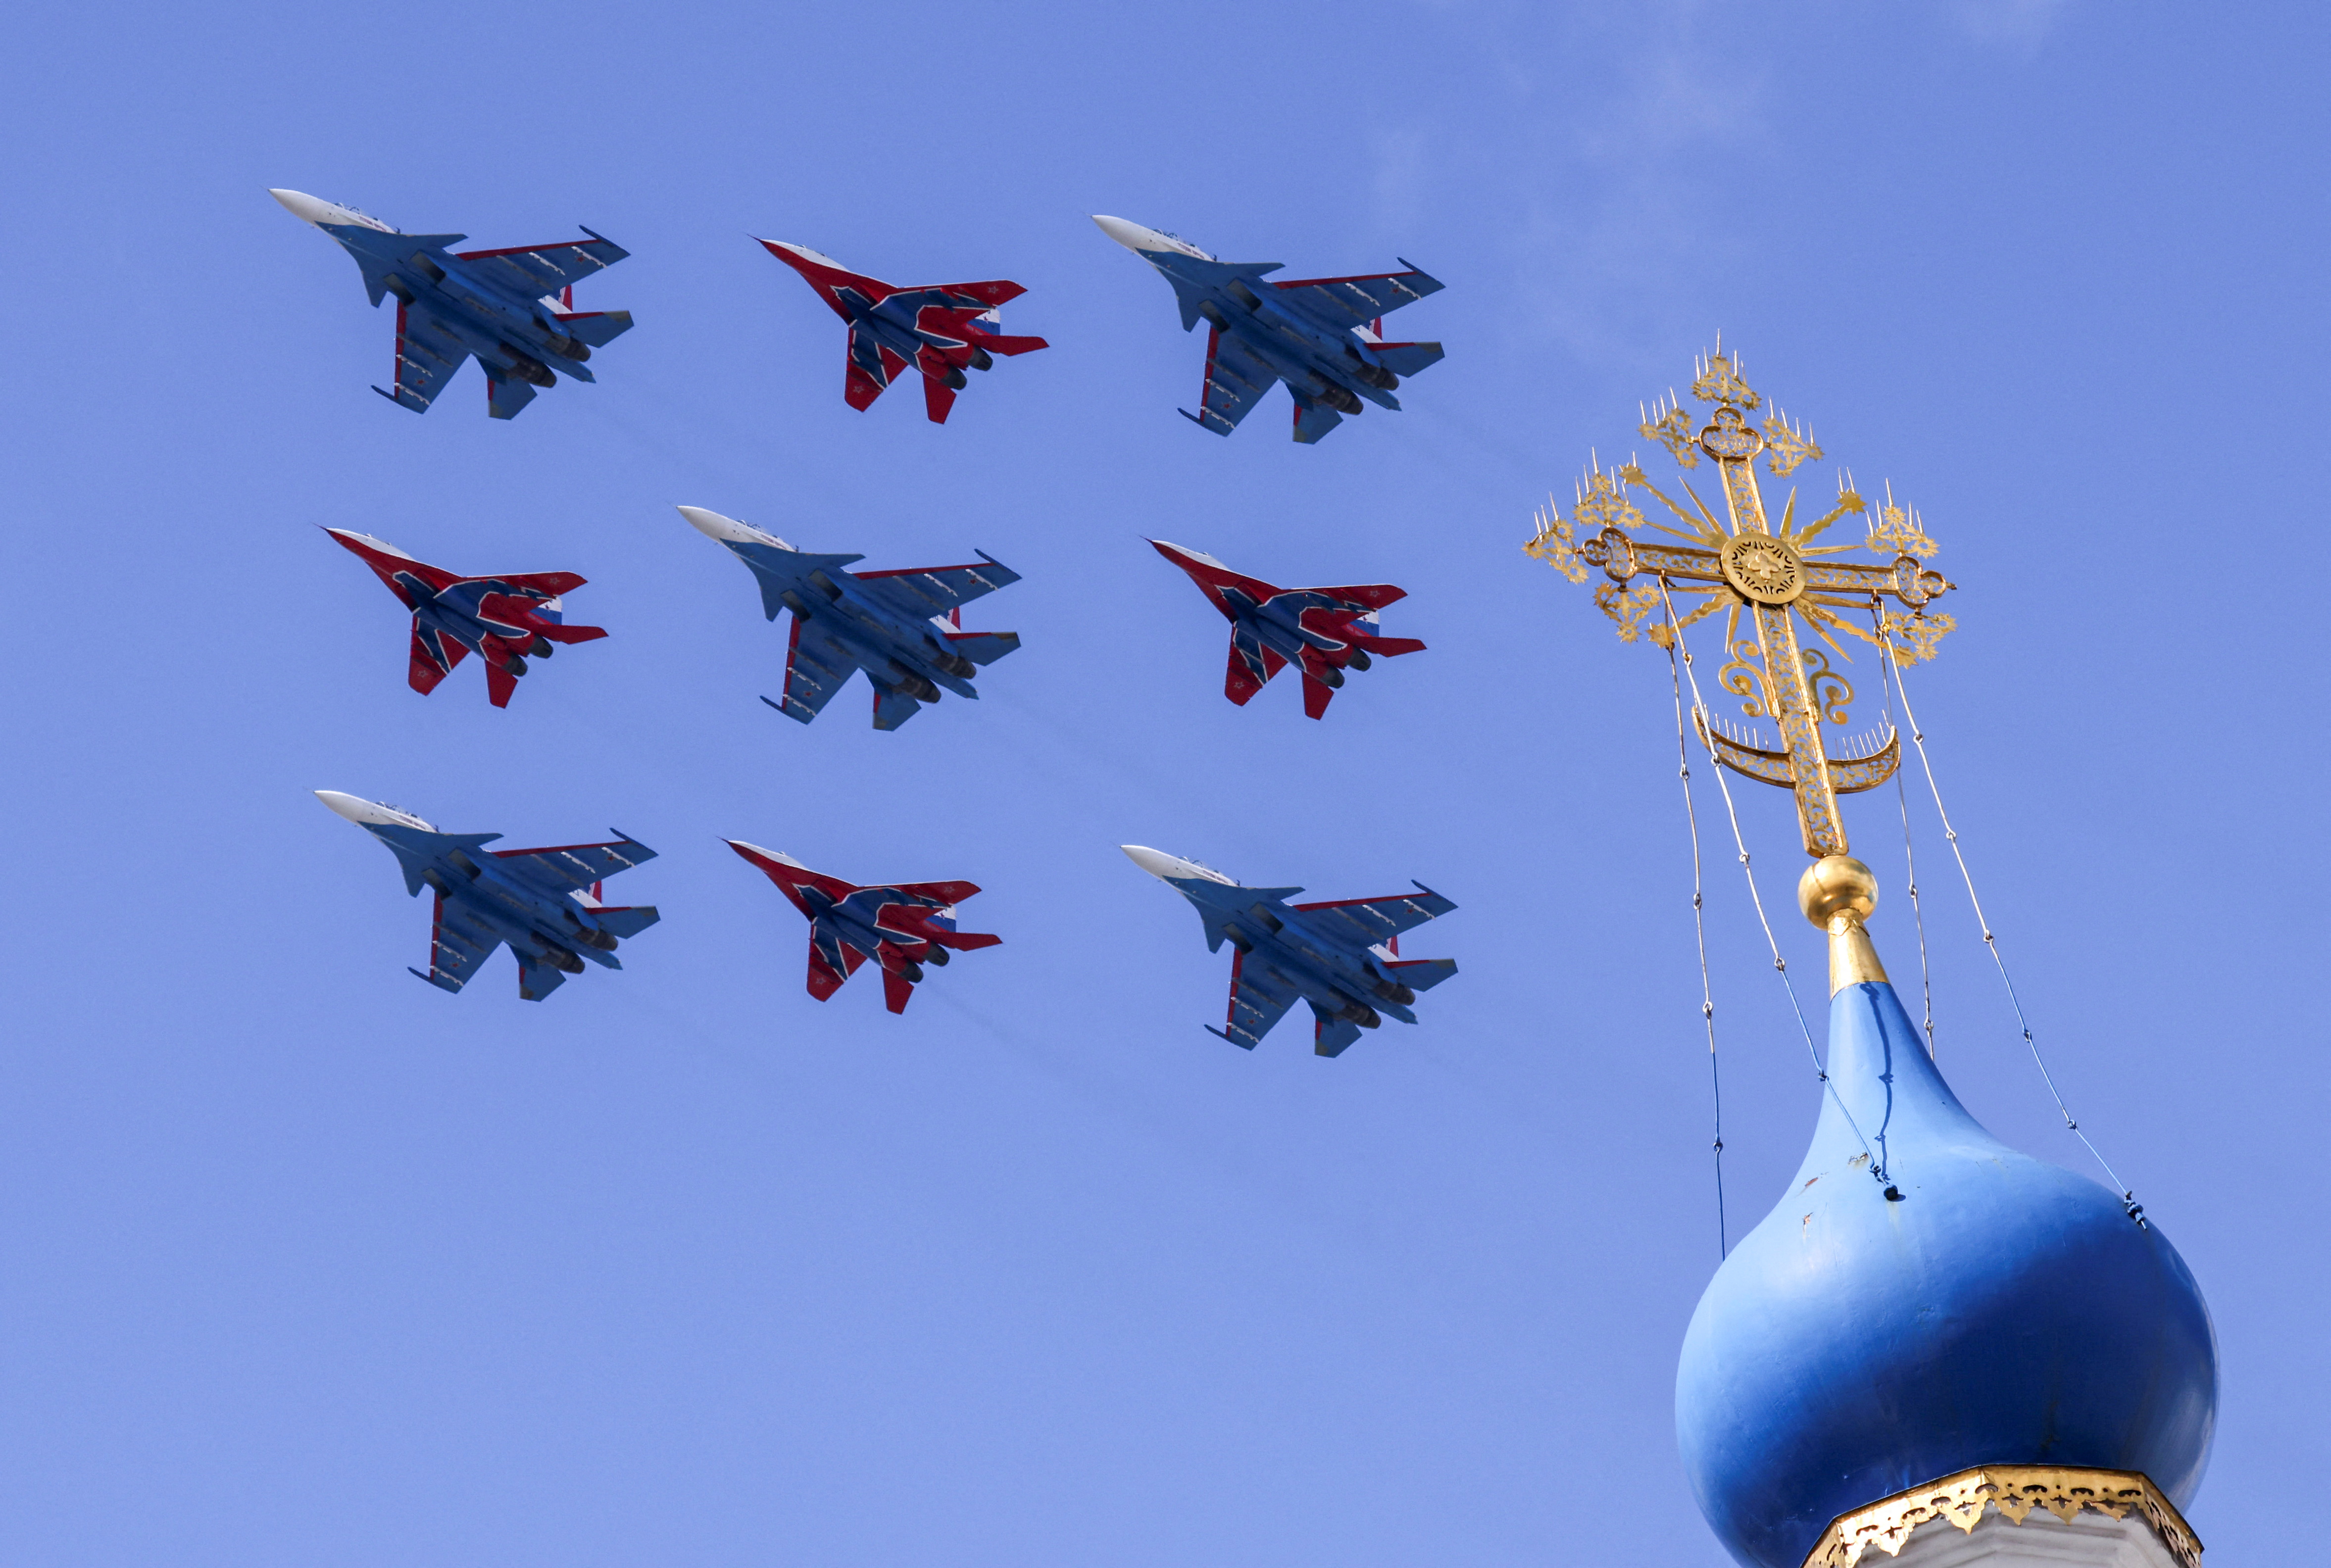 Los aviones de combate MiG-29 del ejército ruso de Strizhi (Swifts) y los aviones de combate Su-30SM de los equipos acrobáticos Russkiye Vityazi (Caballeros Rusos) vuelan en formación durante un ensayo  (REUTERS/Maxim Shemetov)